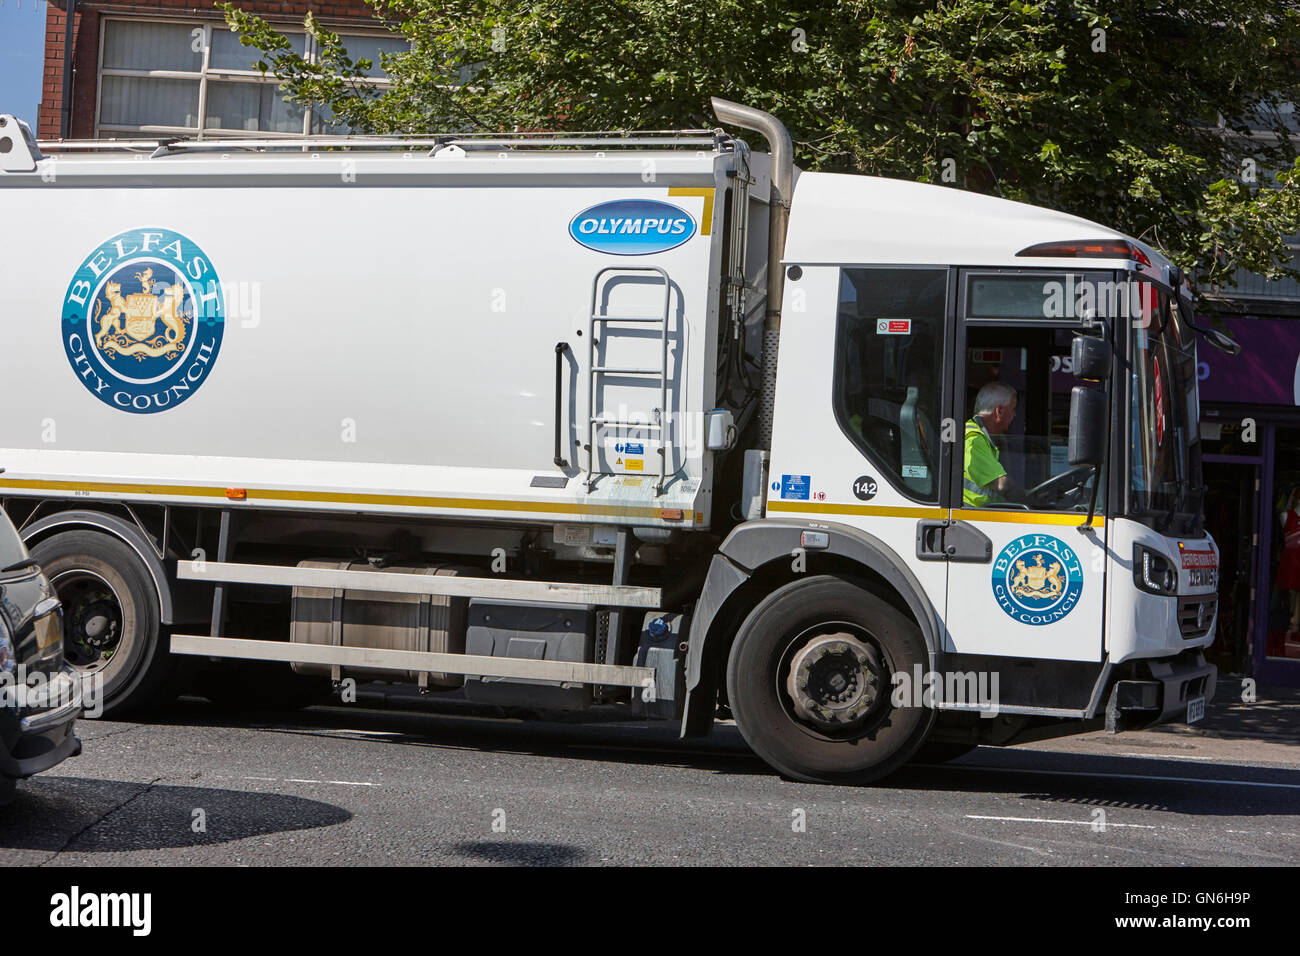 El ayuntamiento de Belfast se niegan camión dennis Olympus Foto de stock